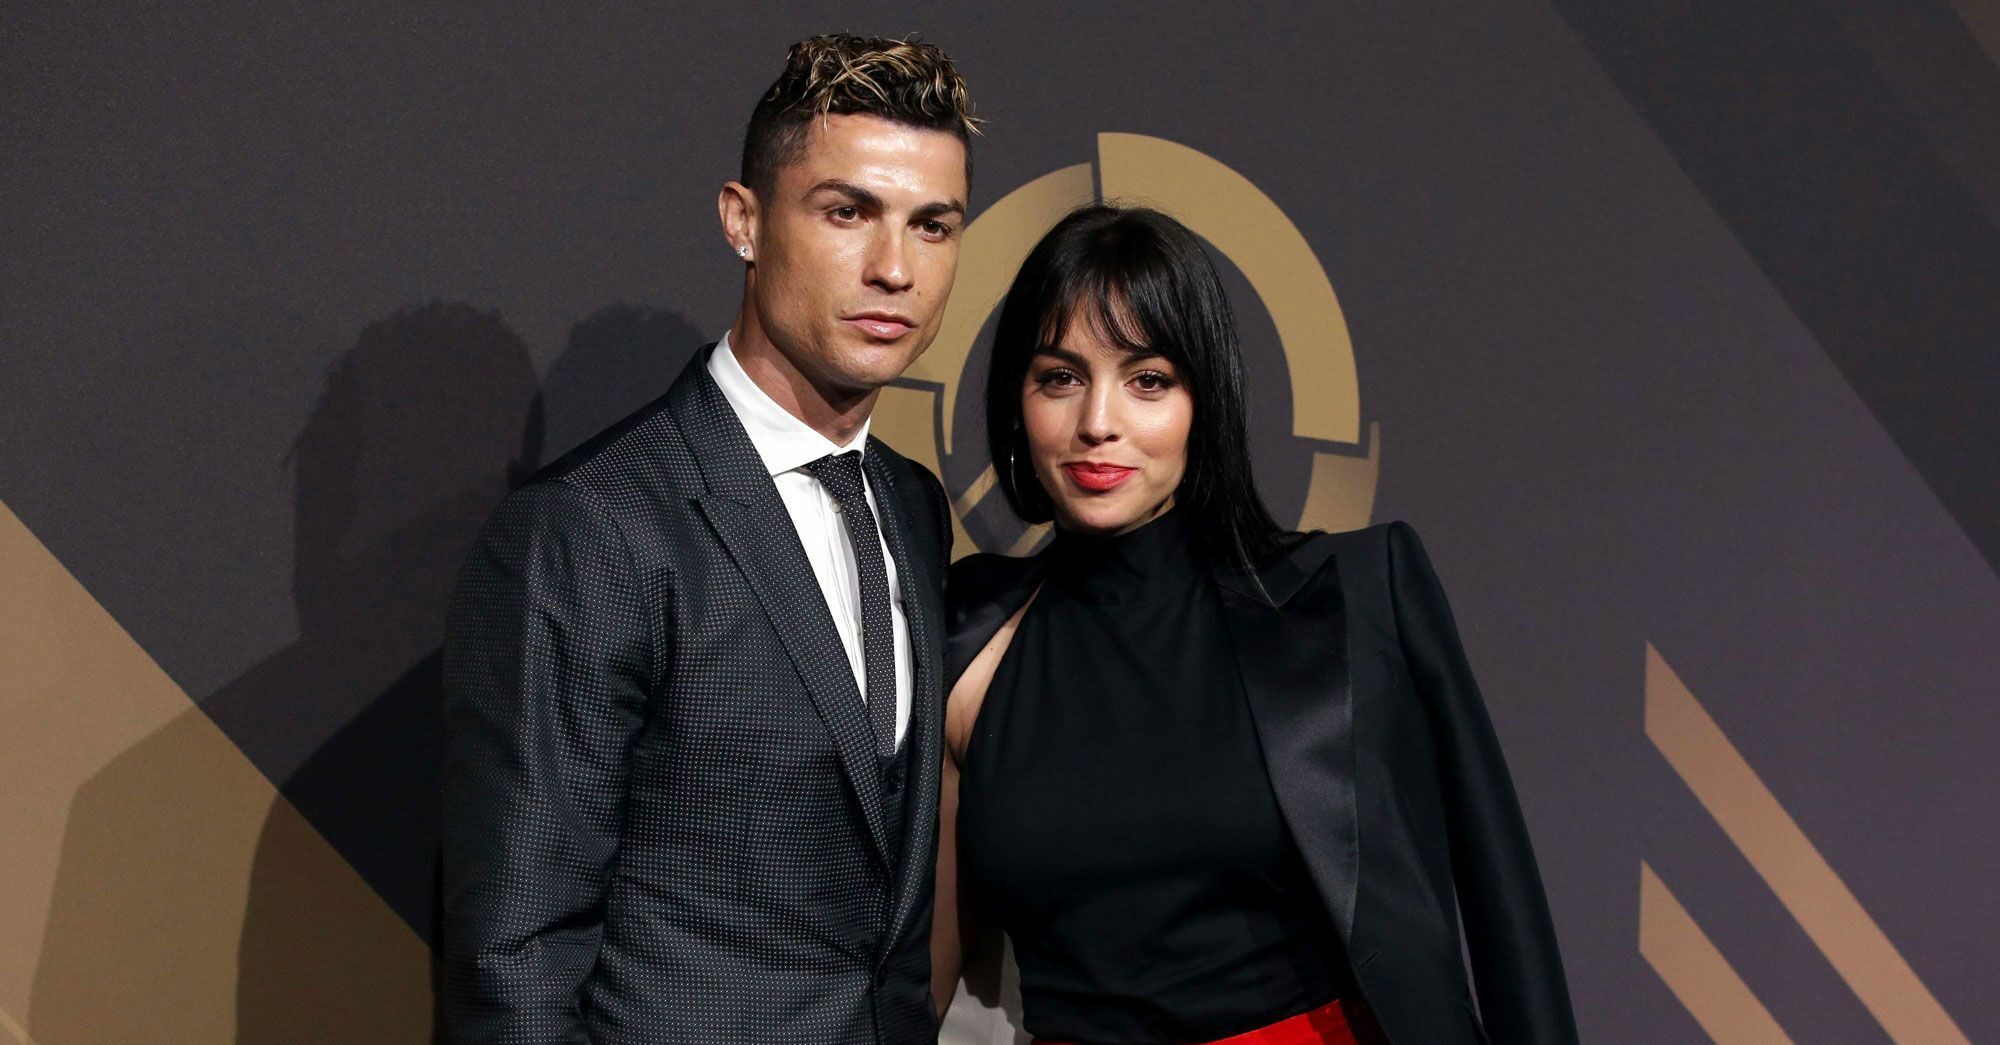 Cristiano Ronaldo et Georgina Rodriguez mariés en secret ? Un message sème le doute